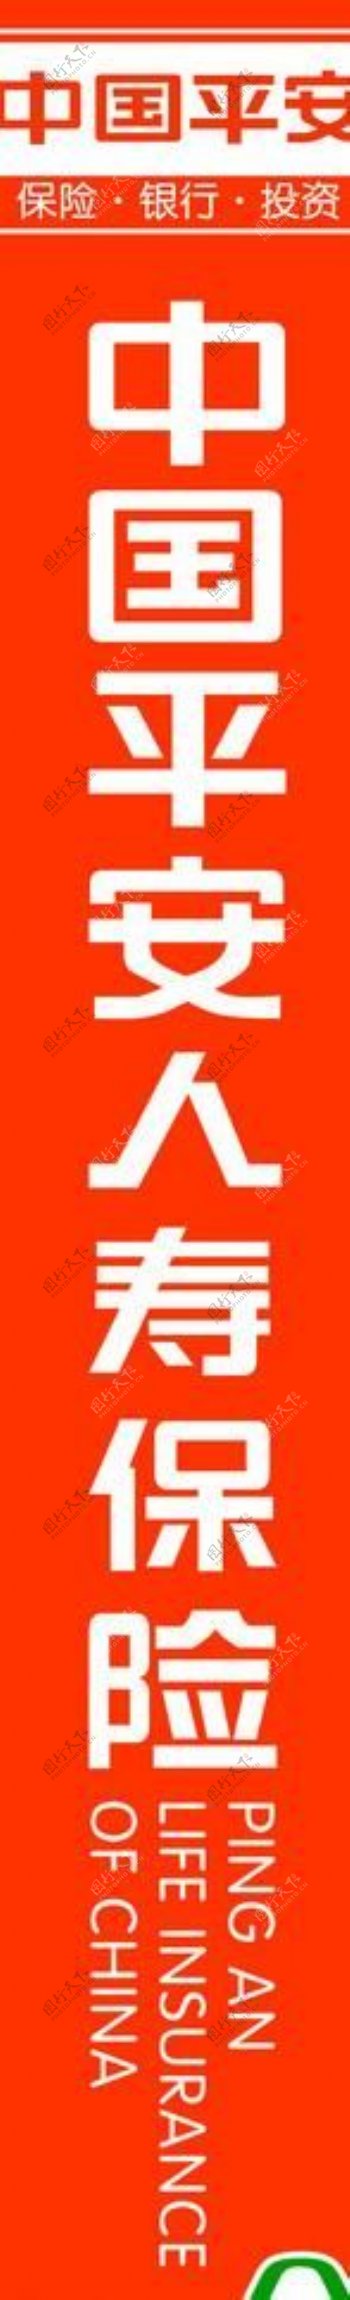 中国平安标准比例新logo图片